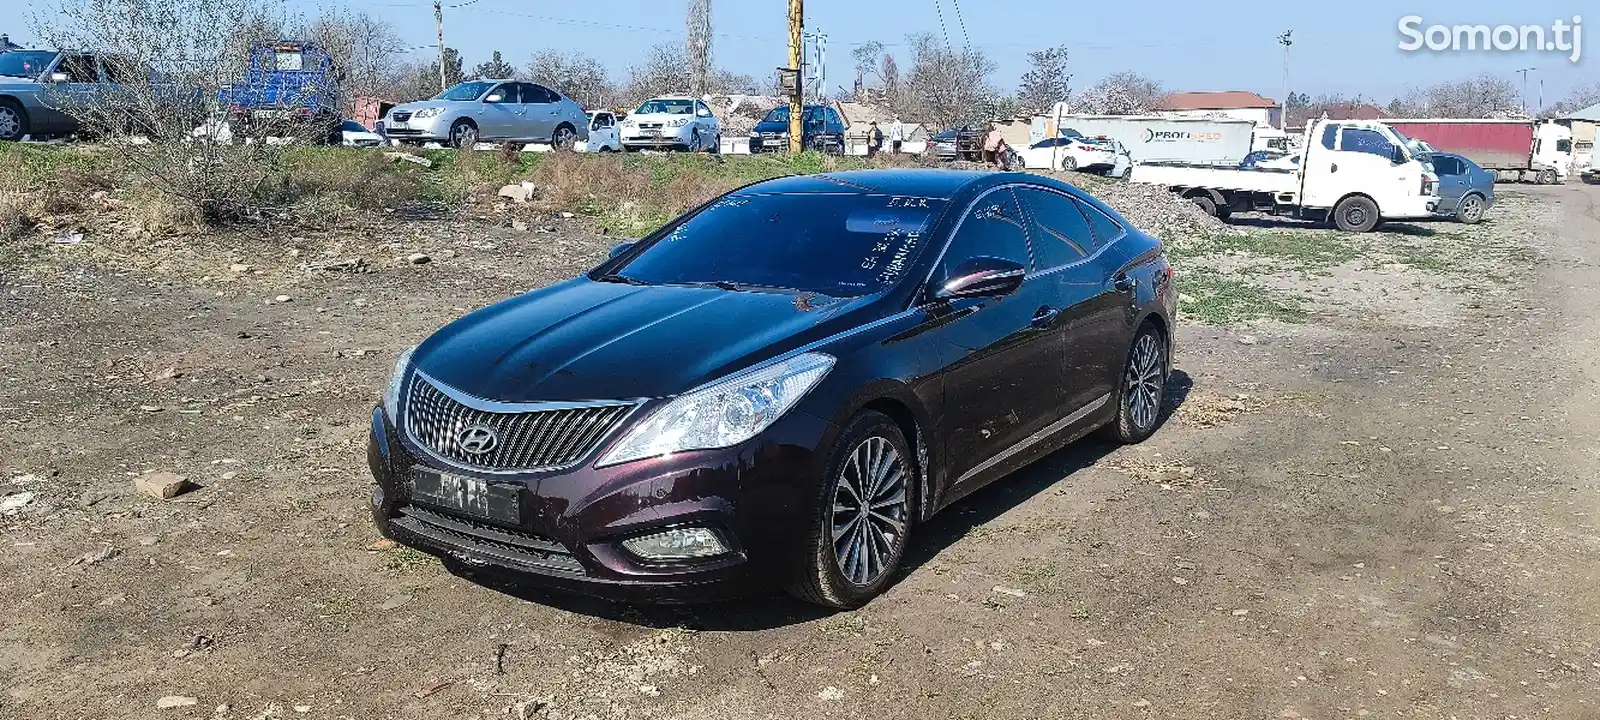 Hyundai Grandeur, 2014-4